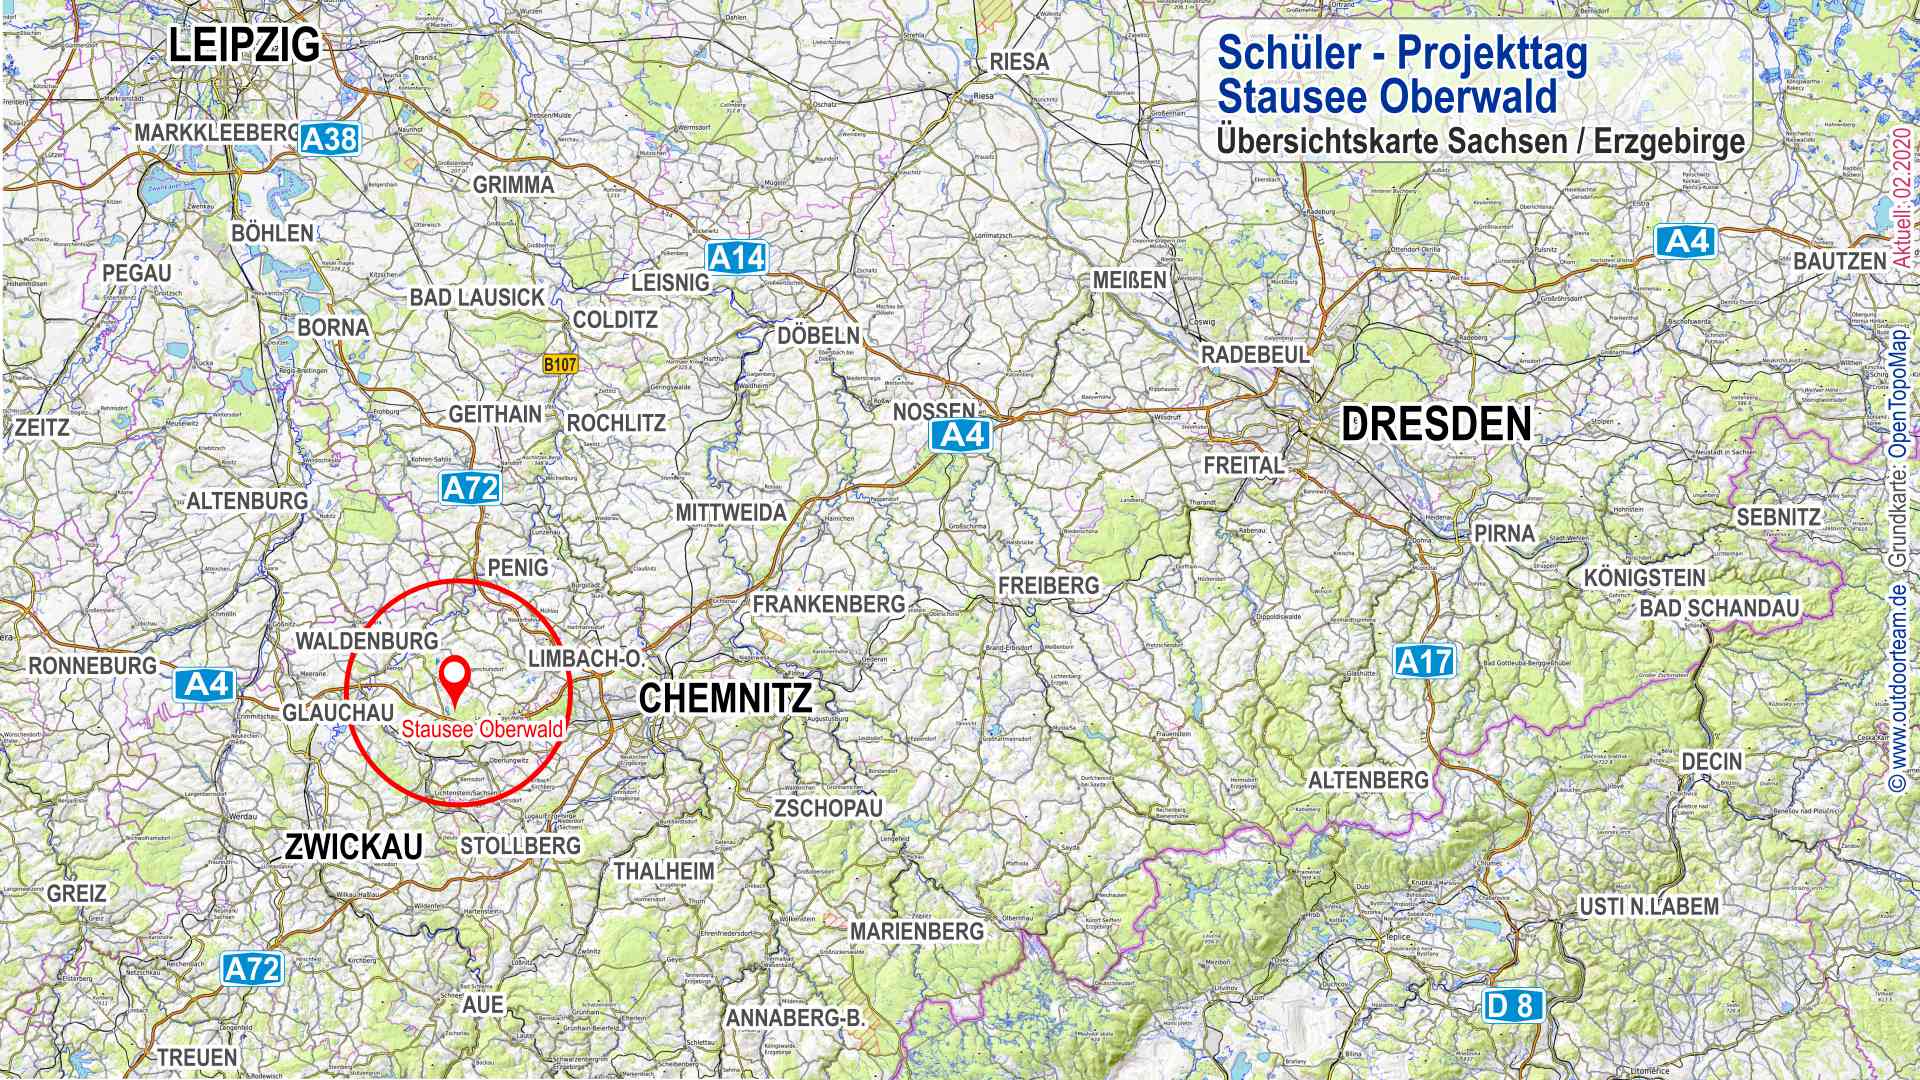 Überischtskarte Sachsen mit rot markiertem Standort Stausee Oberwald zwischen den Städten Chemnitz und Glauchau.